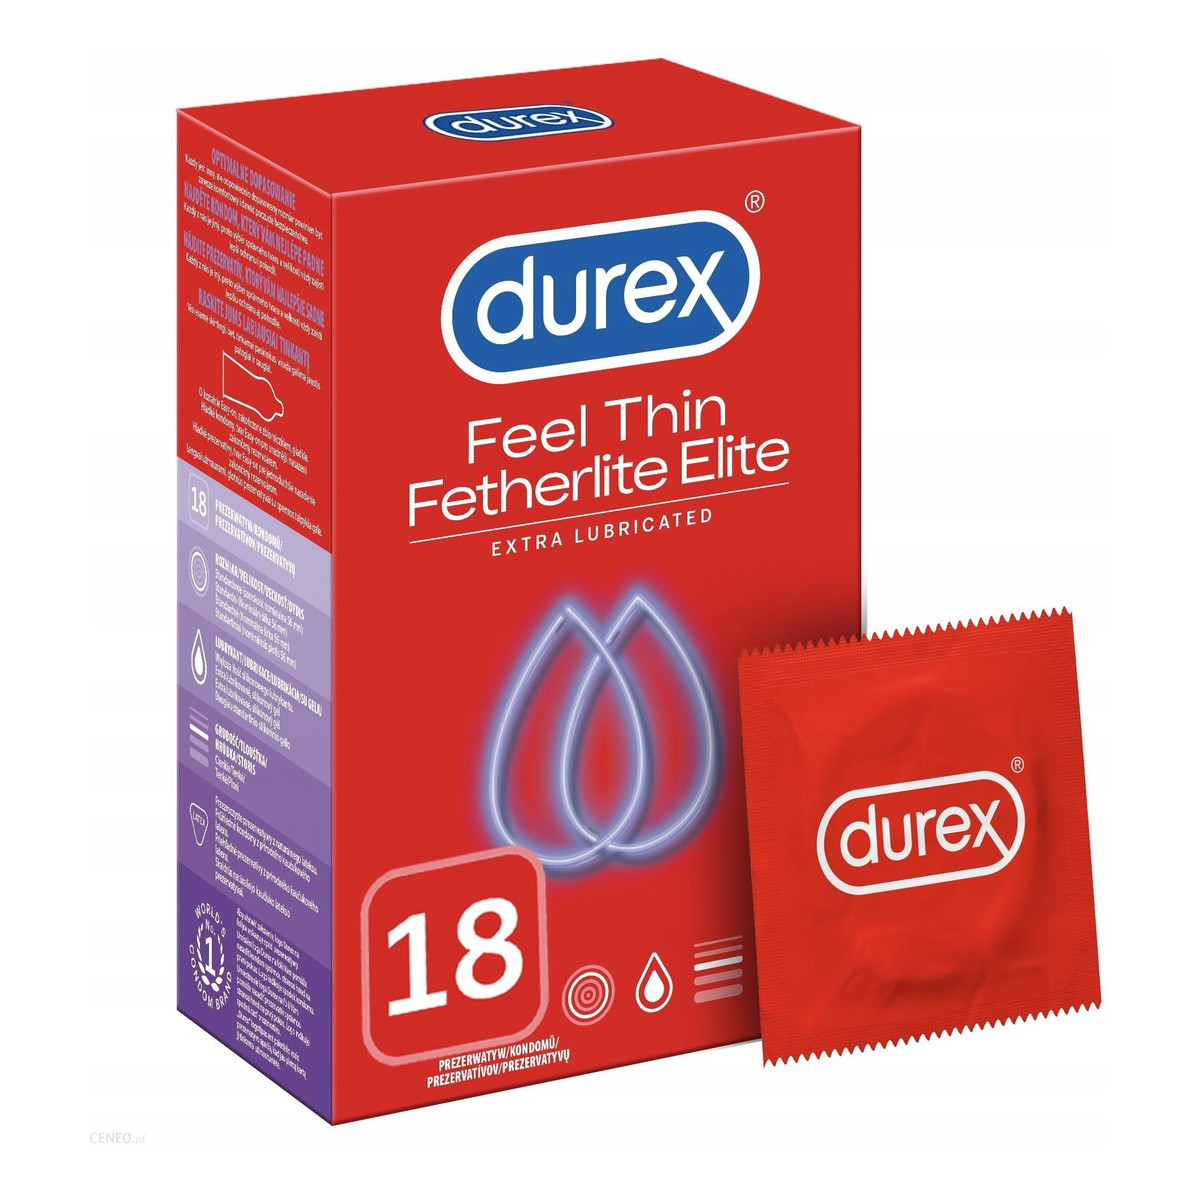 Durex Fatherlite Elite cieńsze prezerwatywy z wiekszą ilością żelu 18szt